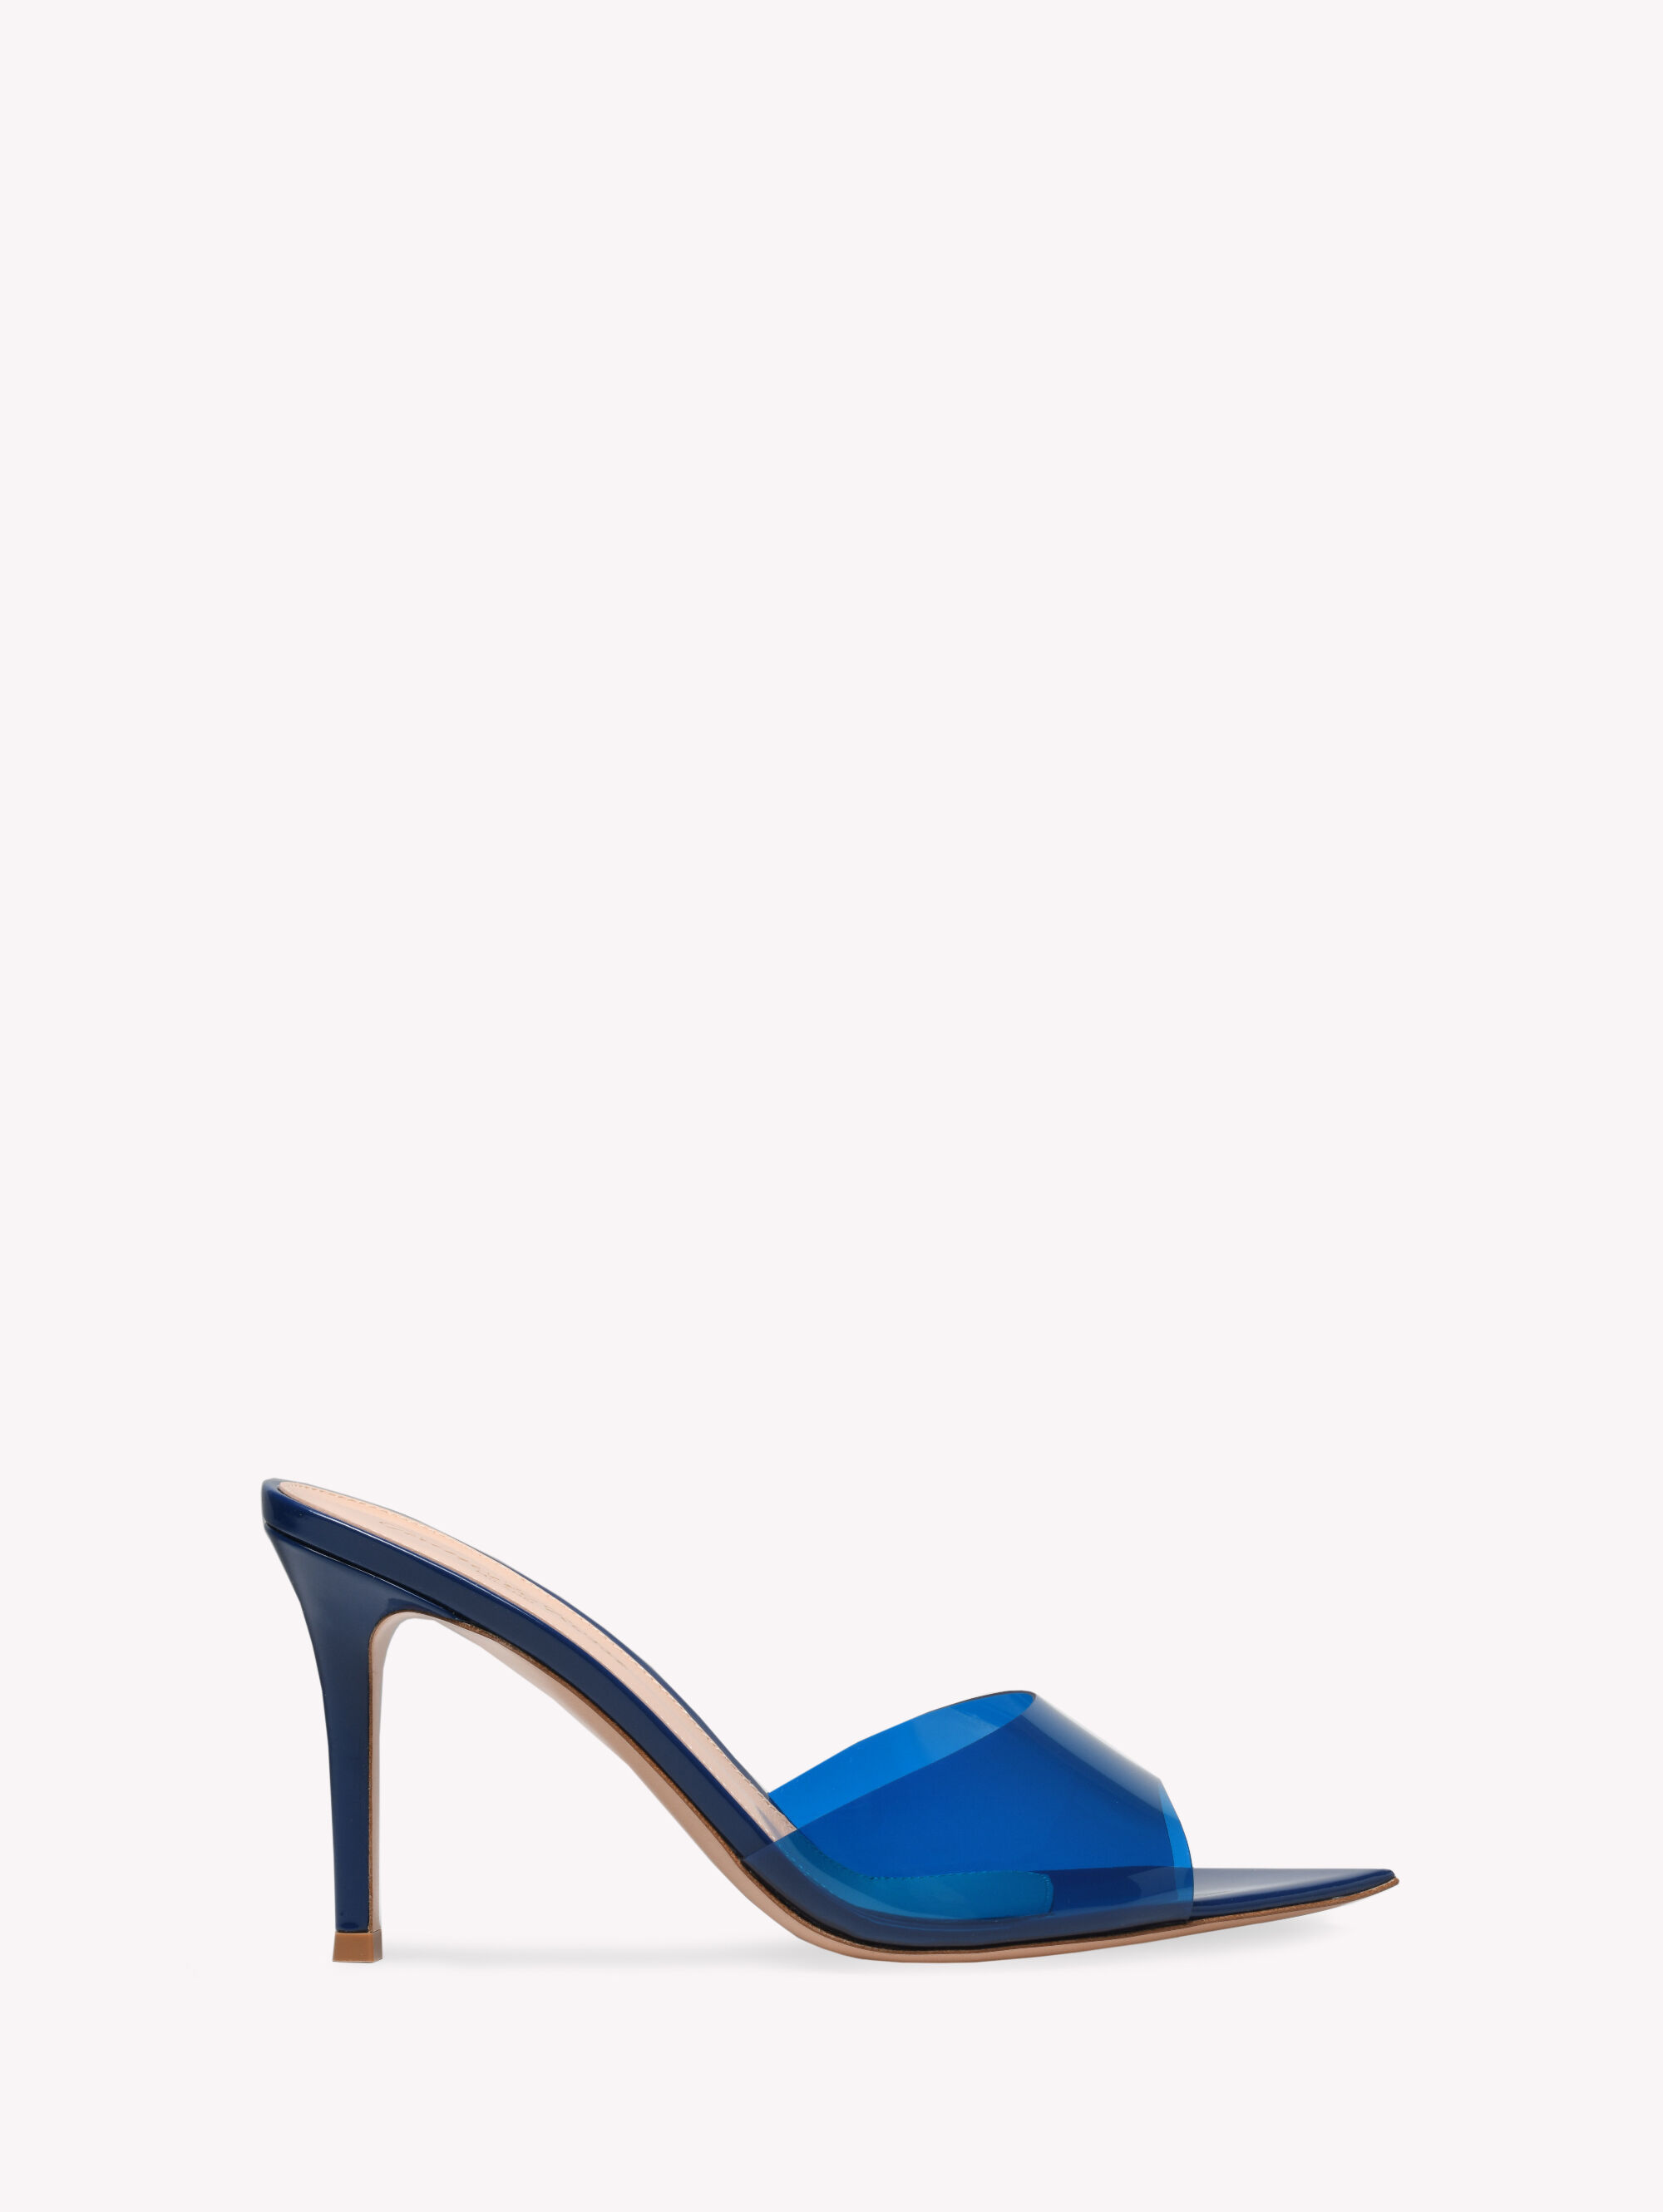 Plexi Shoes for Women | Gianvito Rossi